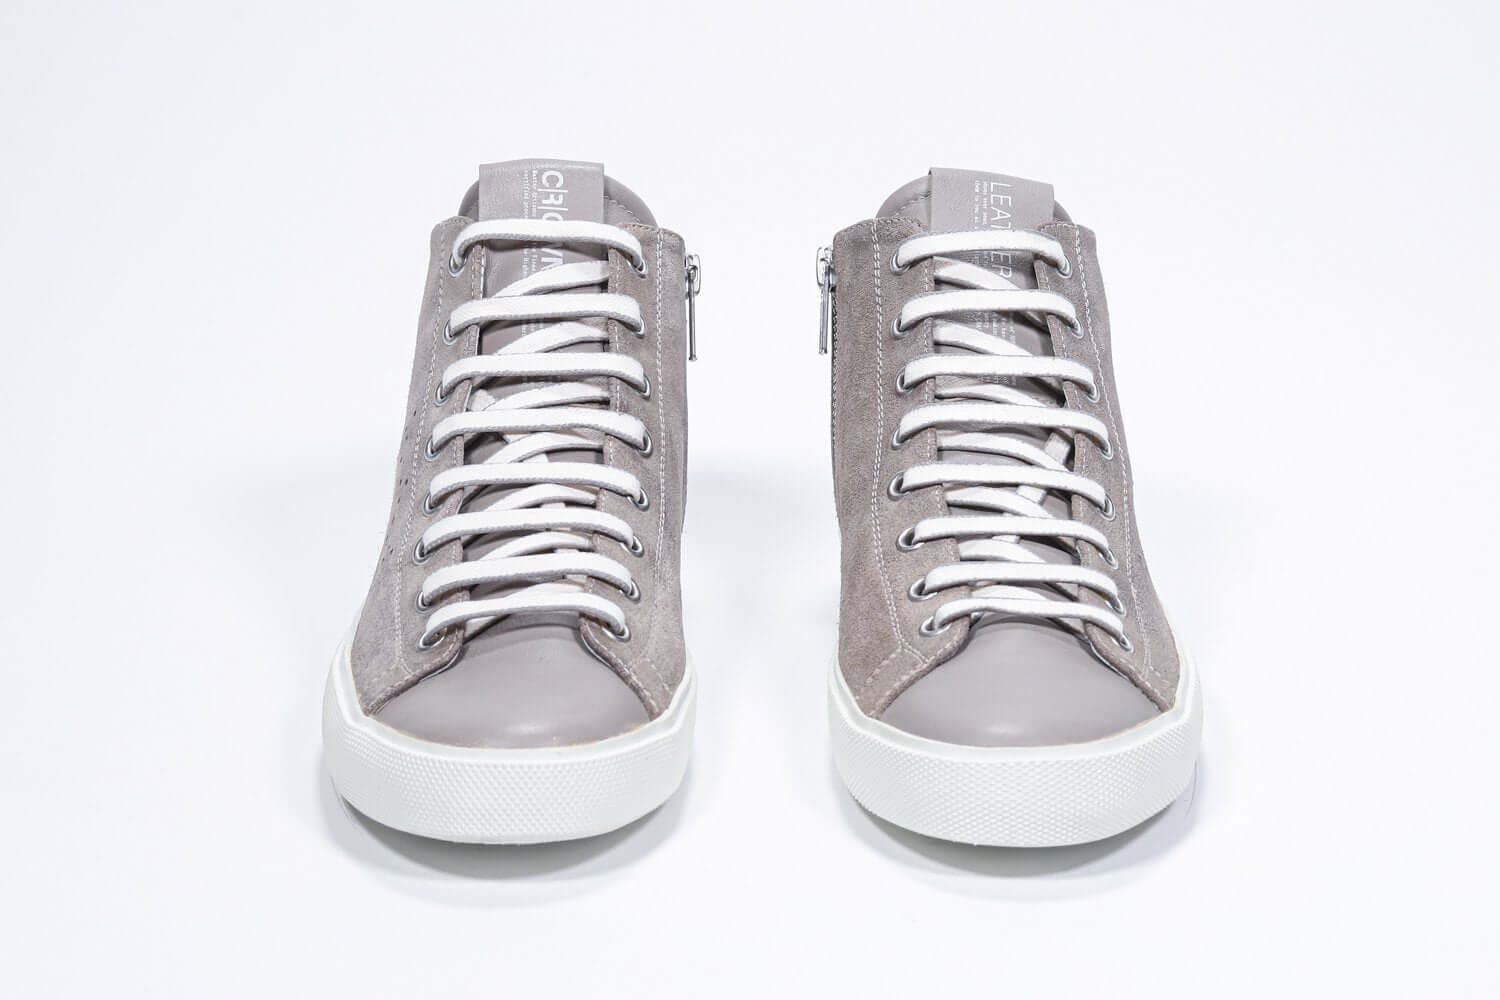 Vorderansicht des beigefarbenen Mid-Top-Schuhs sneaker mit Obermaterial aus Vollwildleder mit perforiertem Kronenlogo und weißer Sohle.